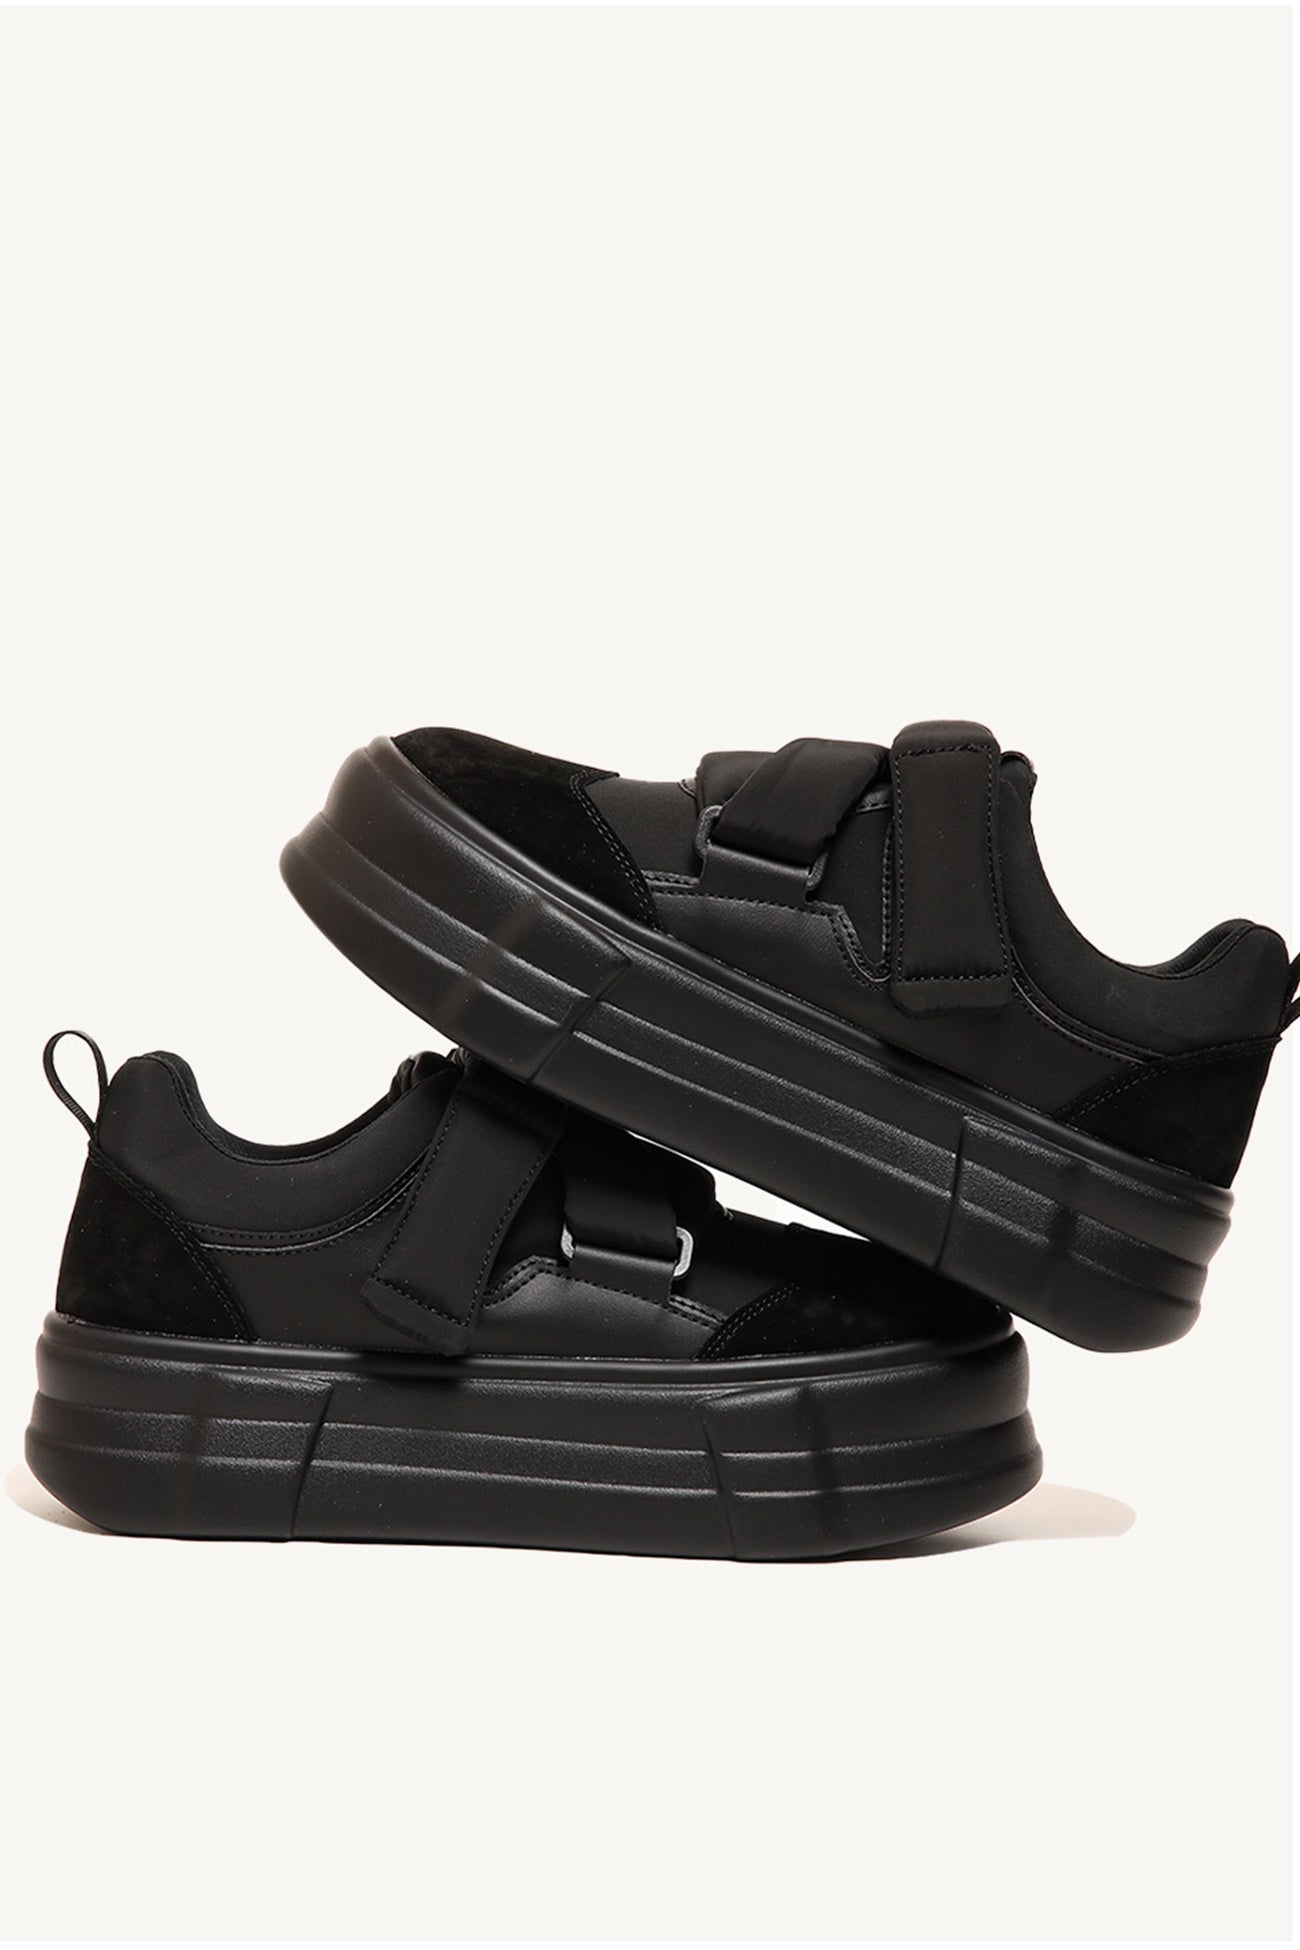 Buy Levi's Men Woods Velcro Black Sneakers-7 UK/India (40.5 EU)  (38113-0105) at Amazon.in